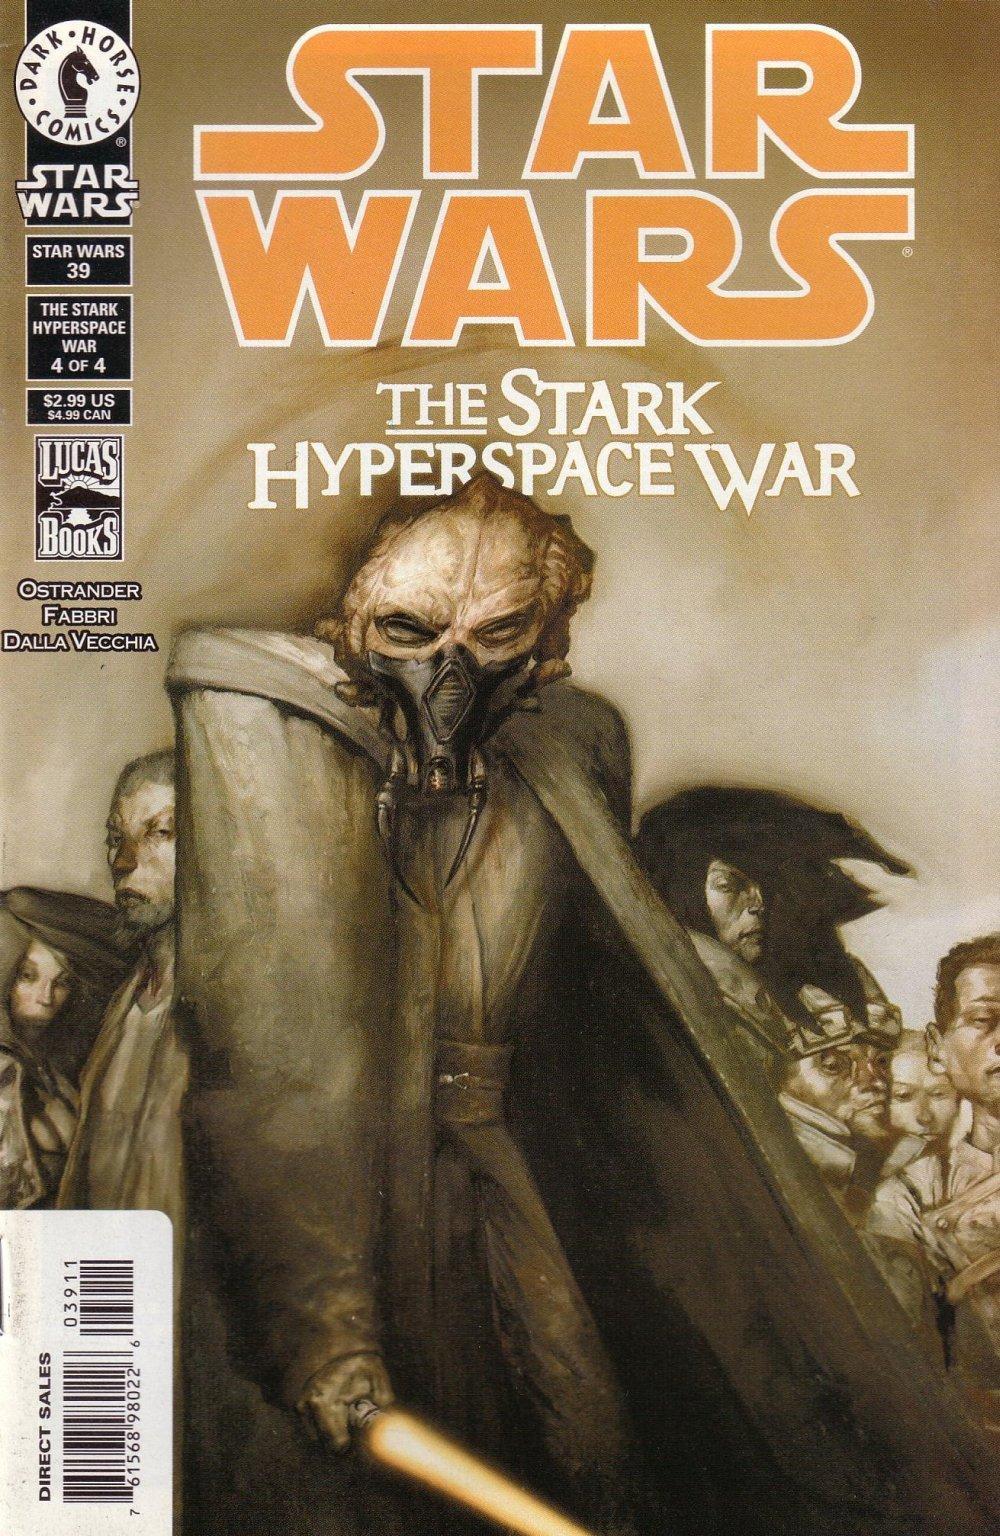 Star Wars: Republic Vol. 1 #39